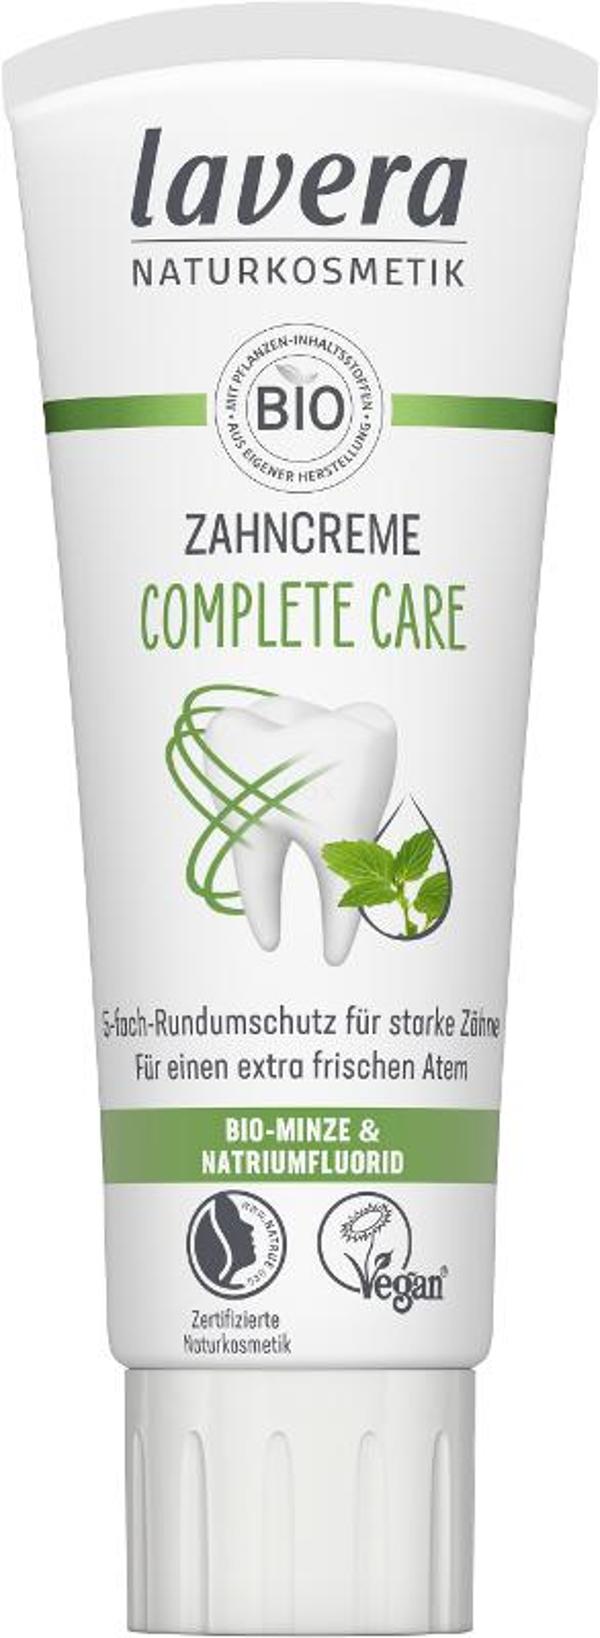 Produktfoto zu Zahncreme Complete Care - mit Minze 75ml